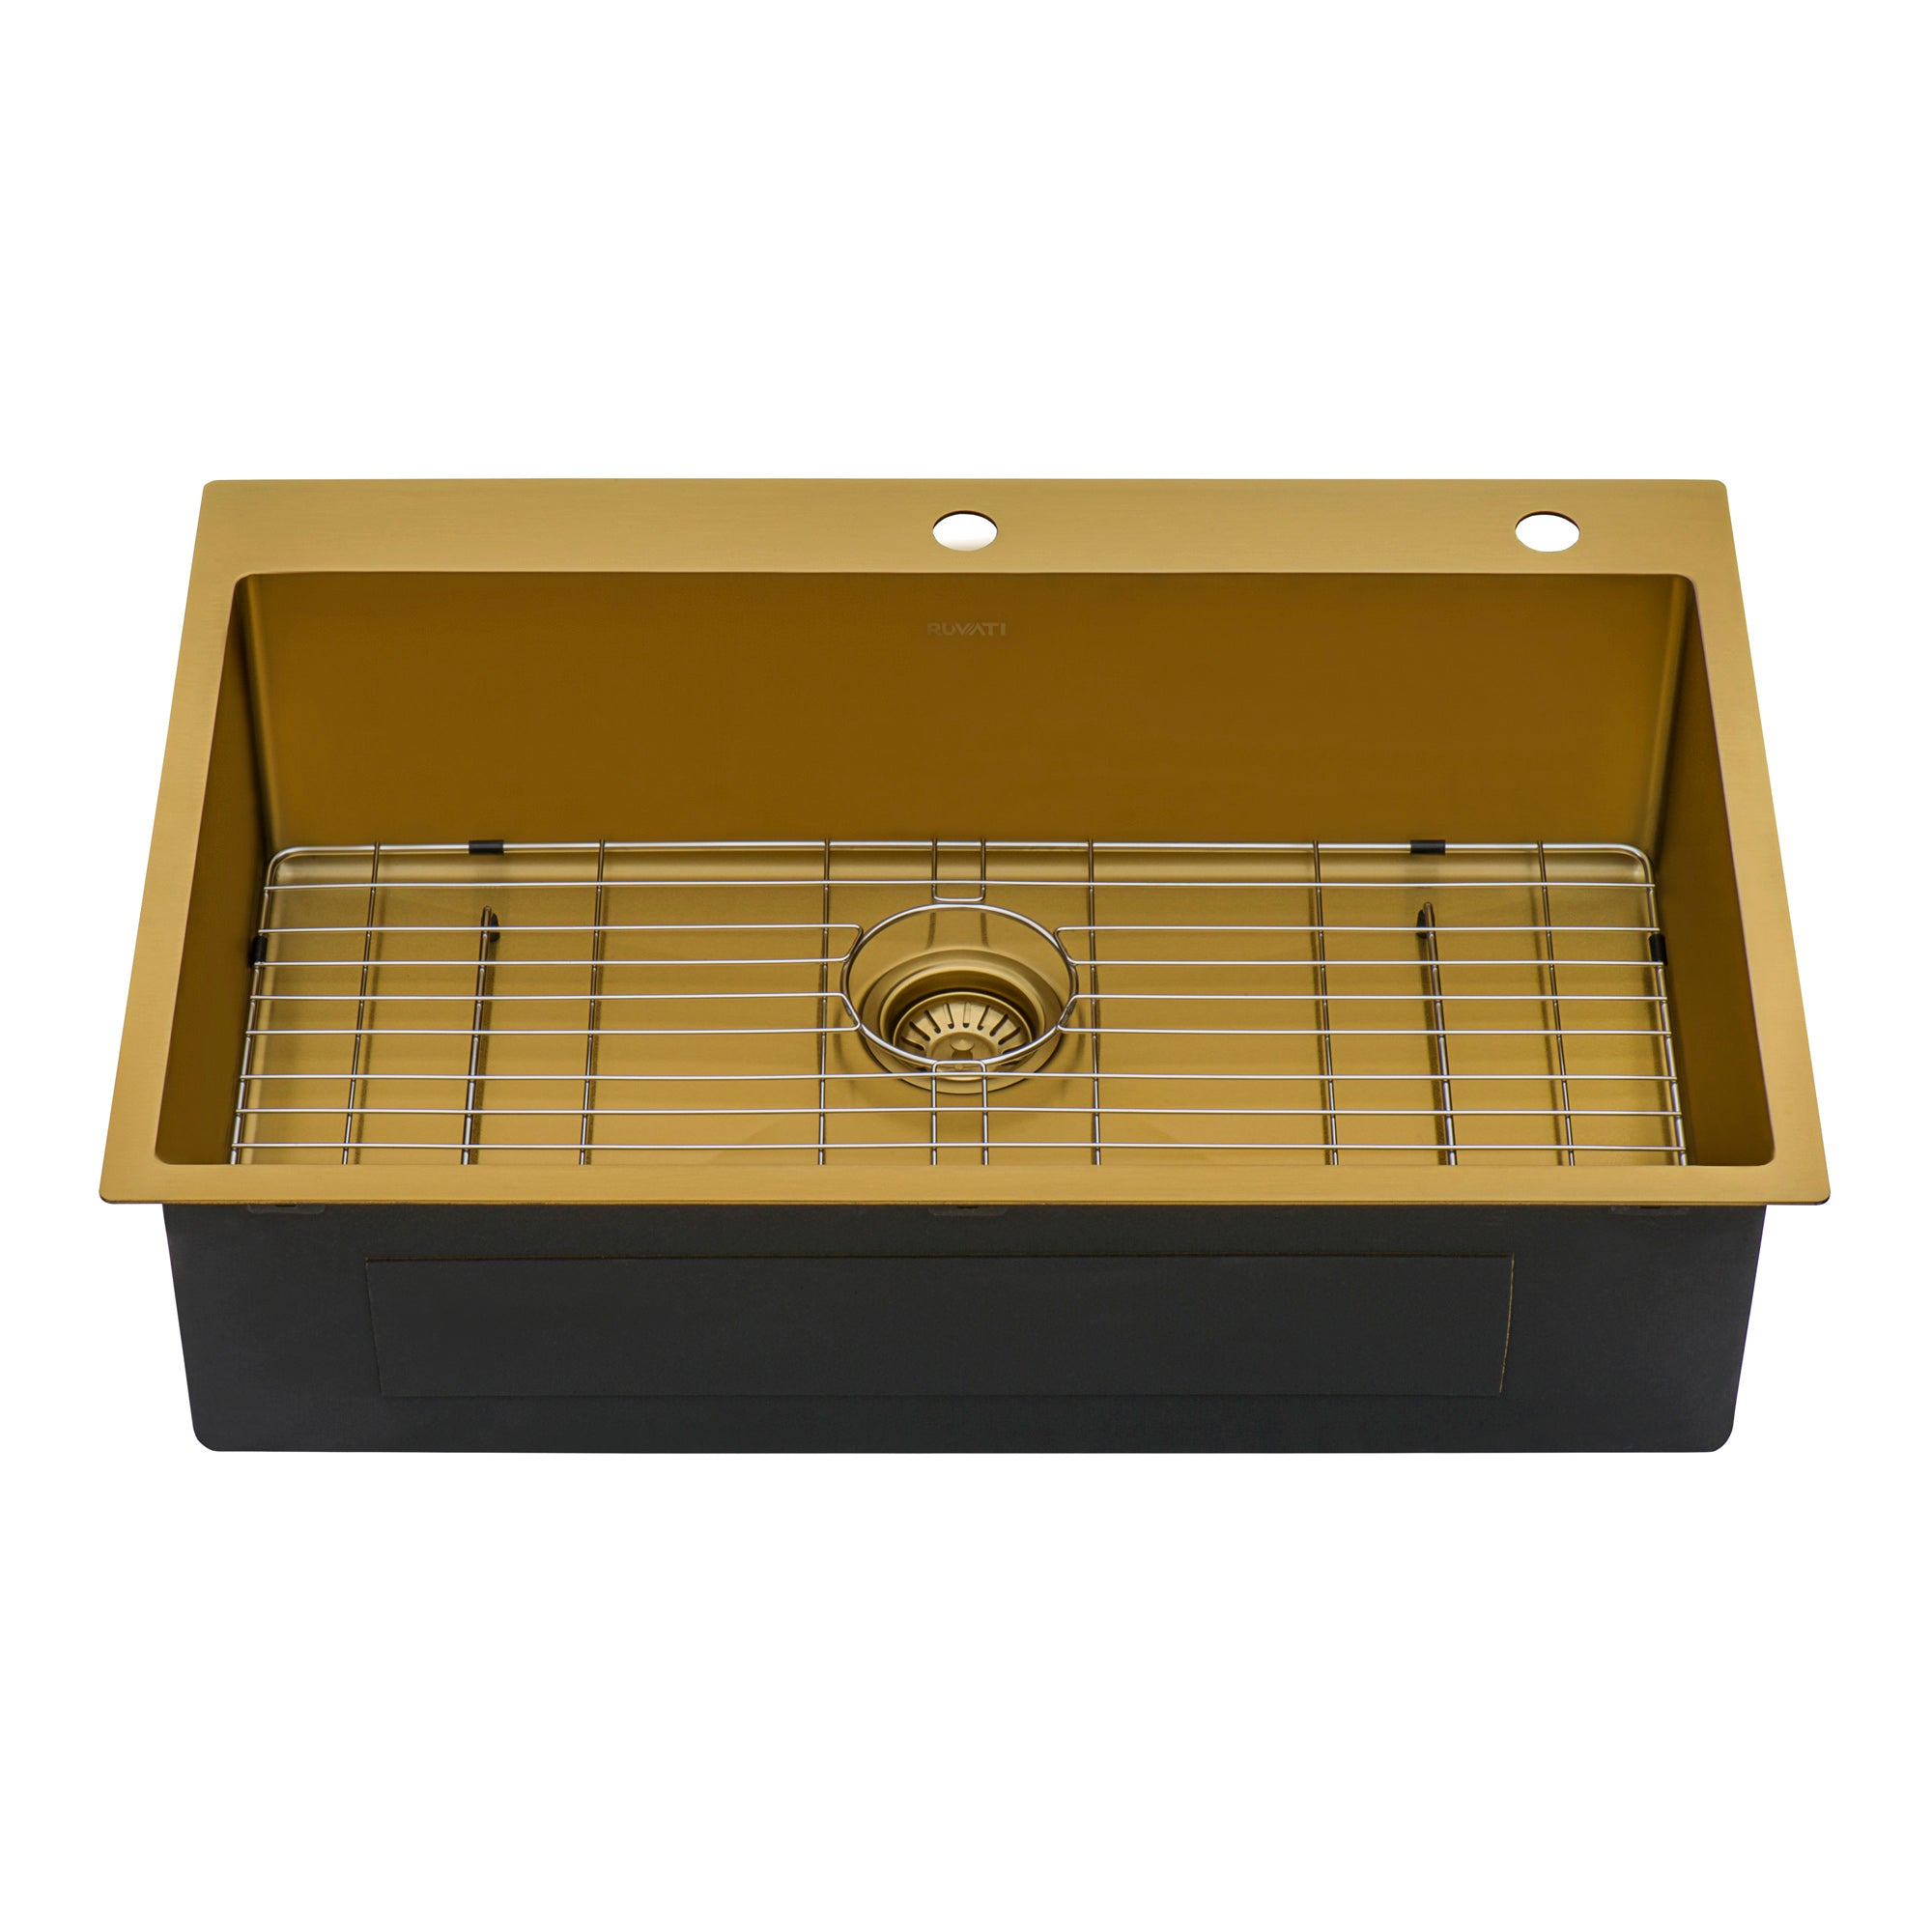 Ruvati 33 x 22 inch Satin Brass Matte Gold Stainless Steel Drop-in Topmount Kitchen Sink Single Bowl – RVH5005GG